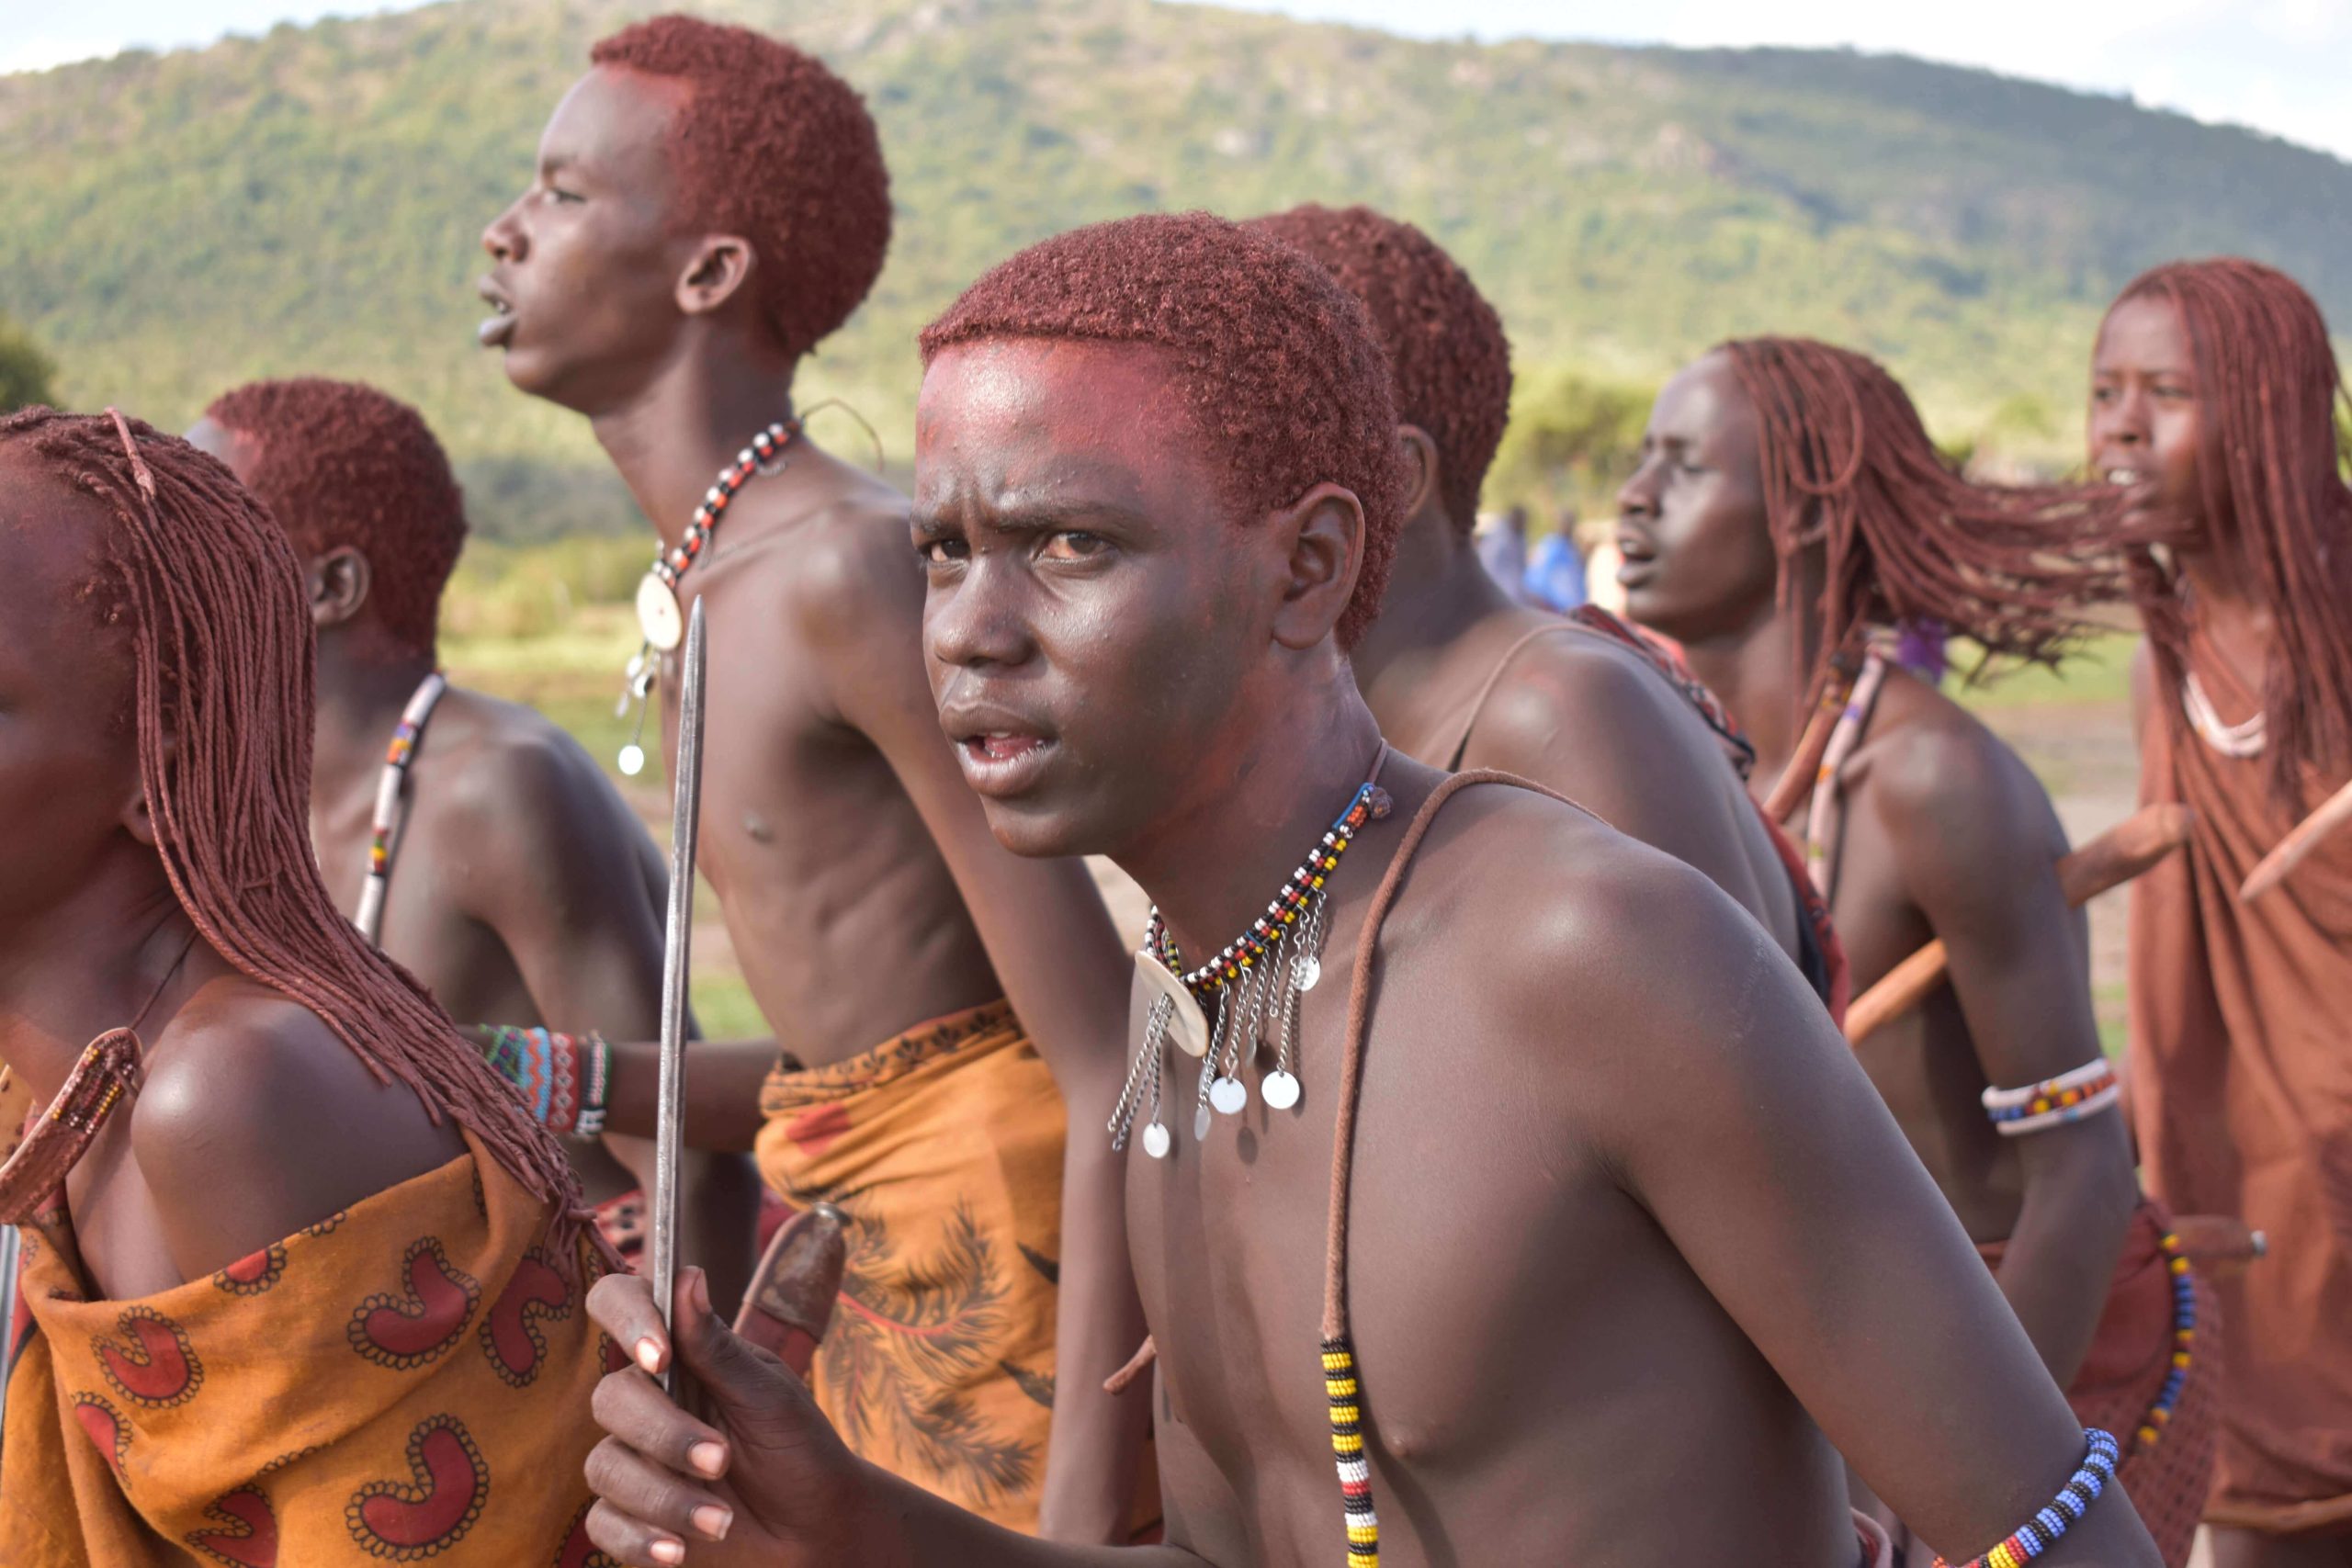 the Kikuyu people